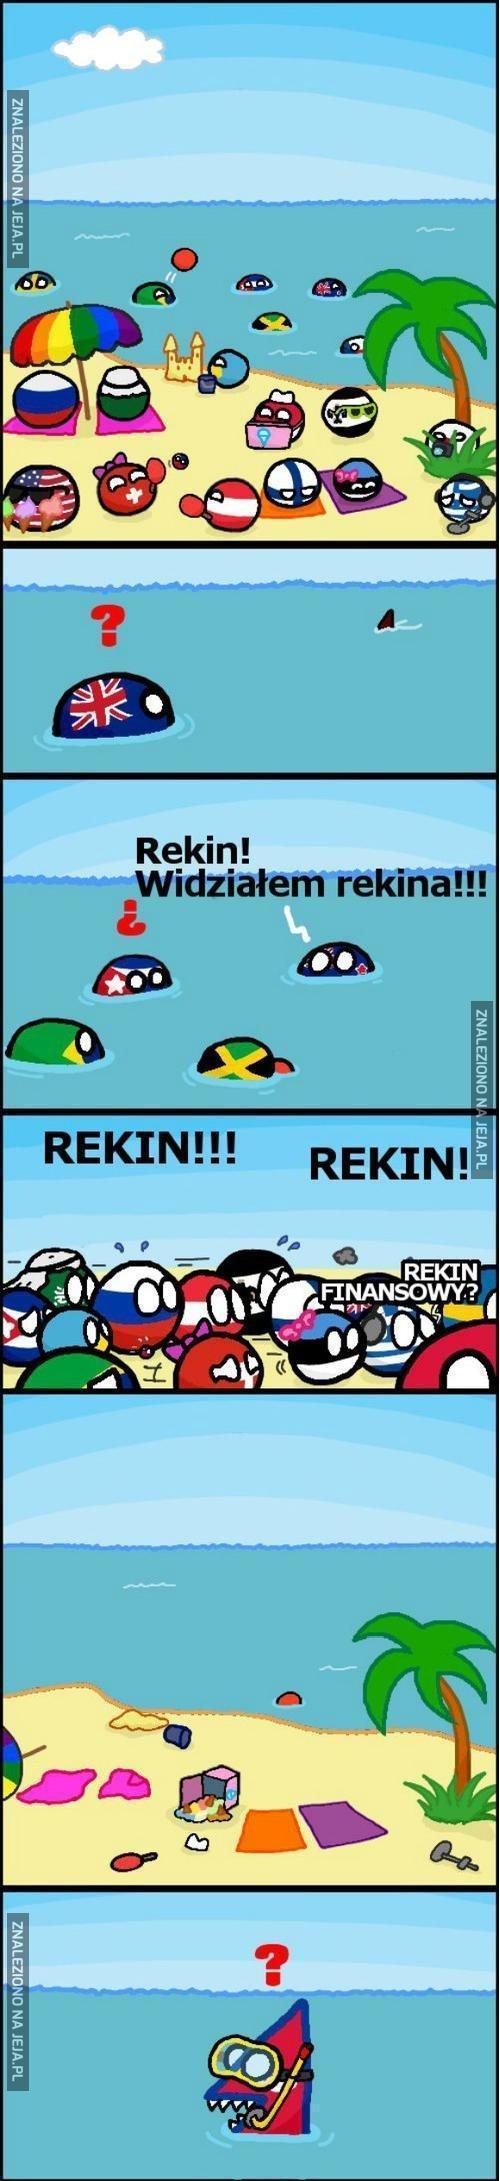 Rekin!